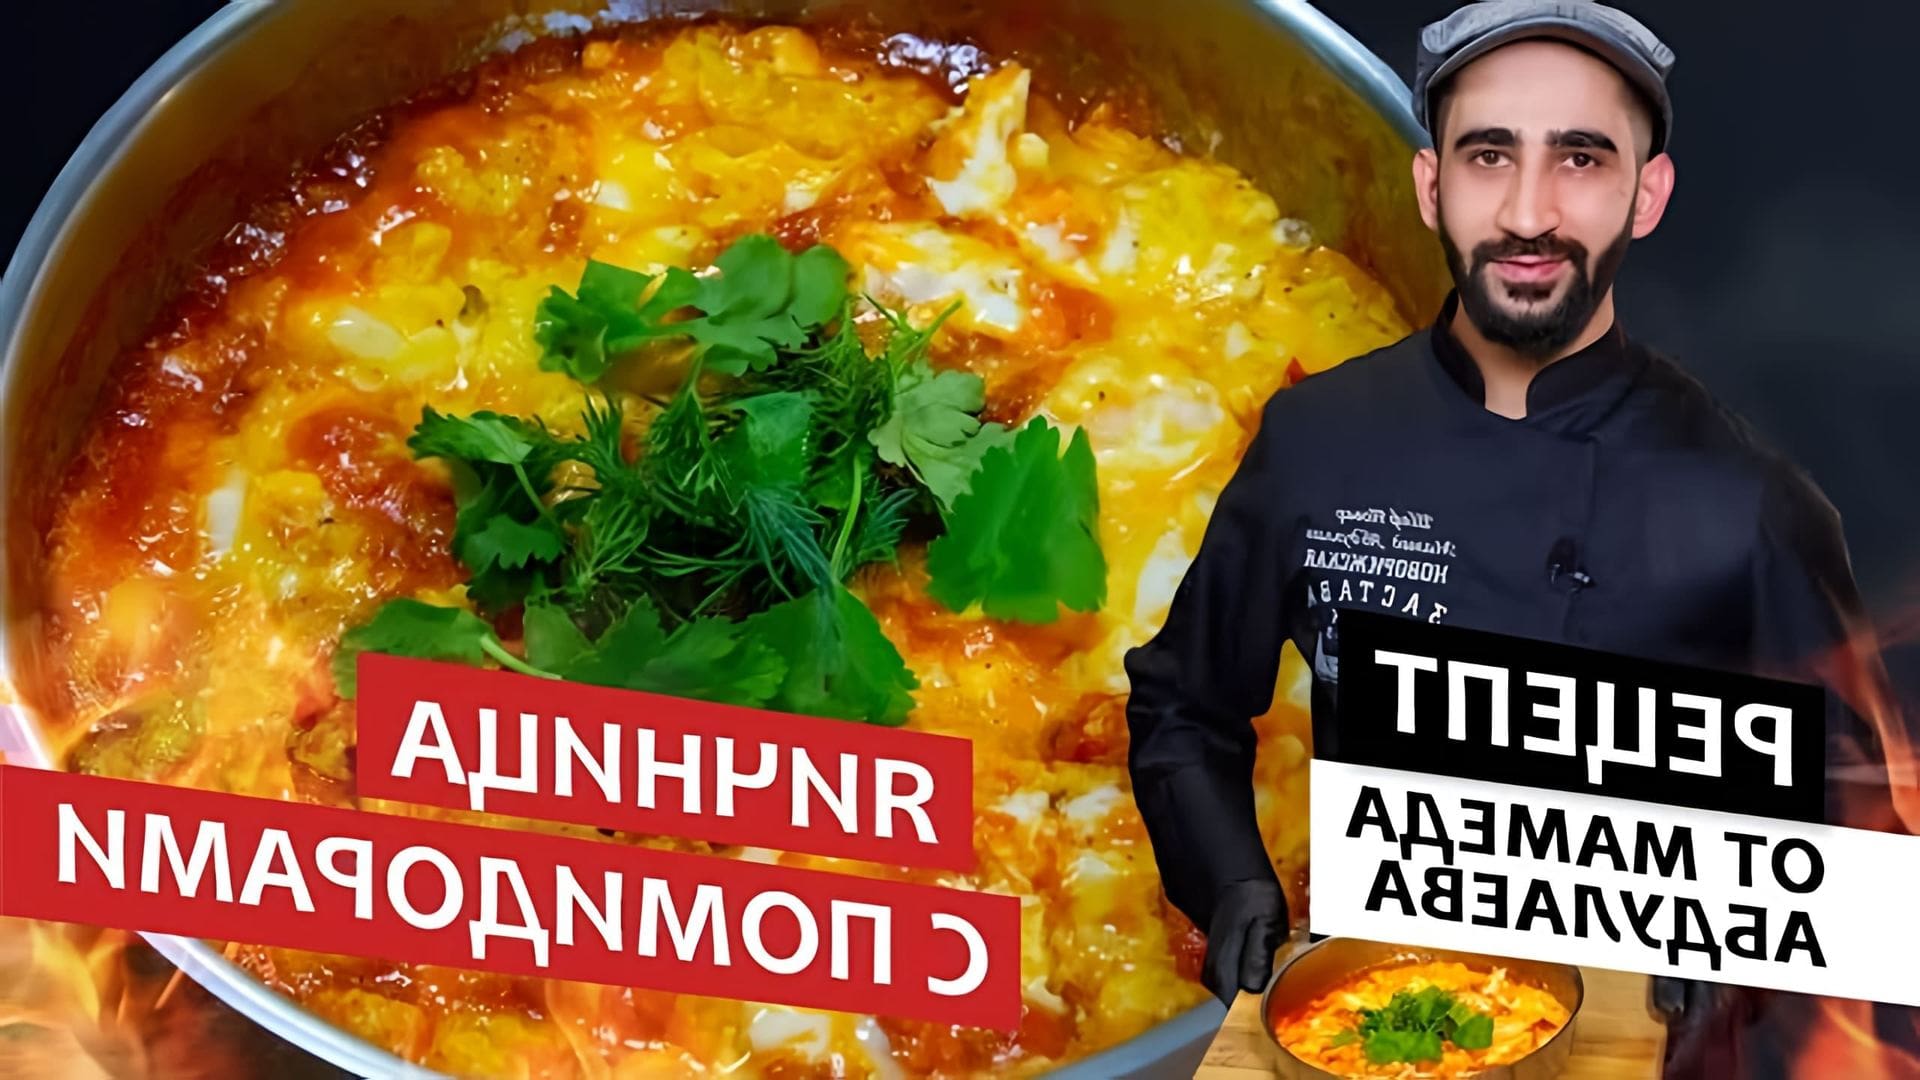 В этом видео шеф-повар Абдуллаев готовит яичницу с помидорами